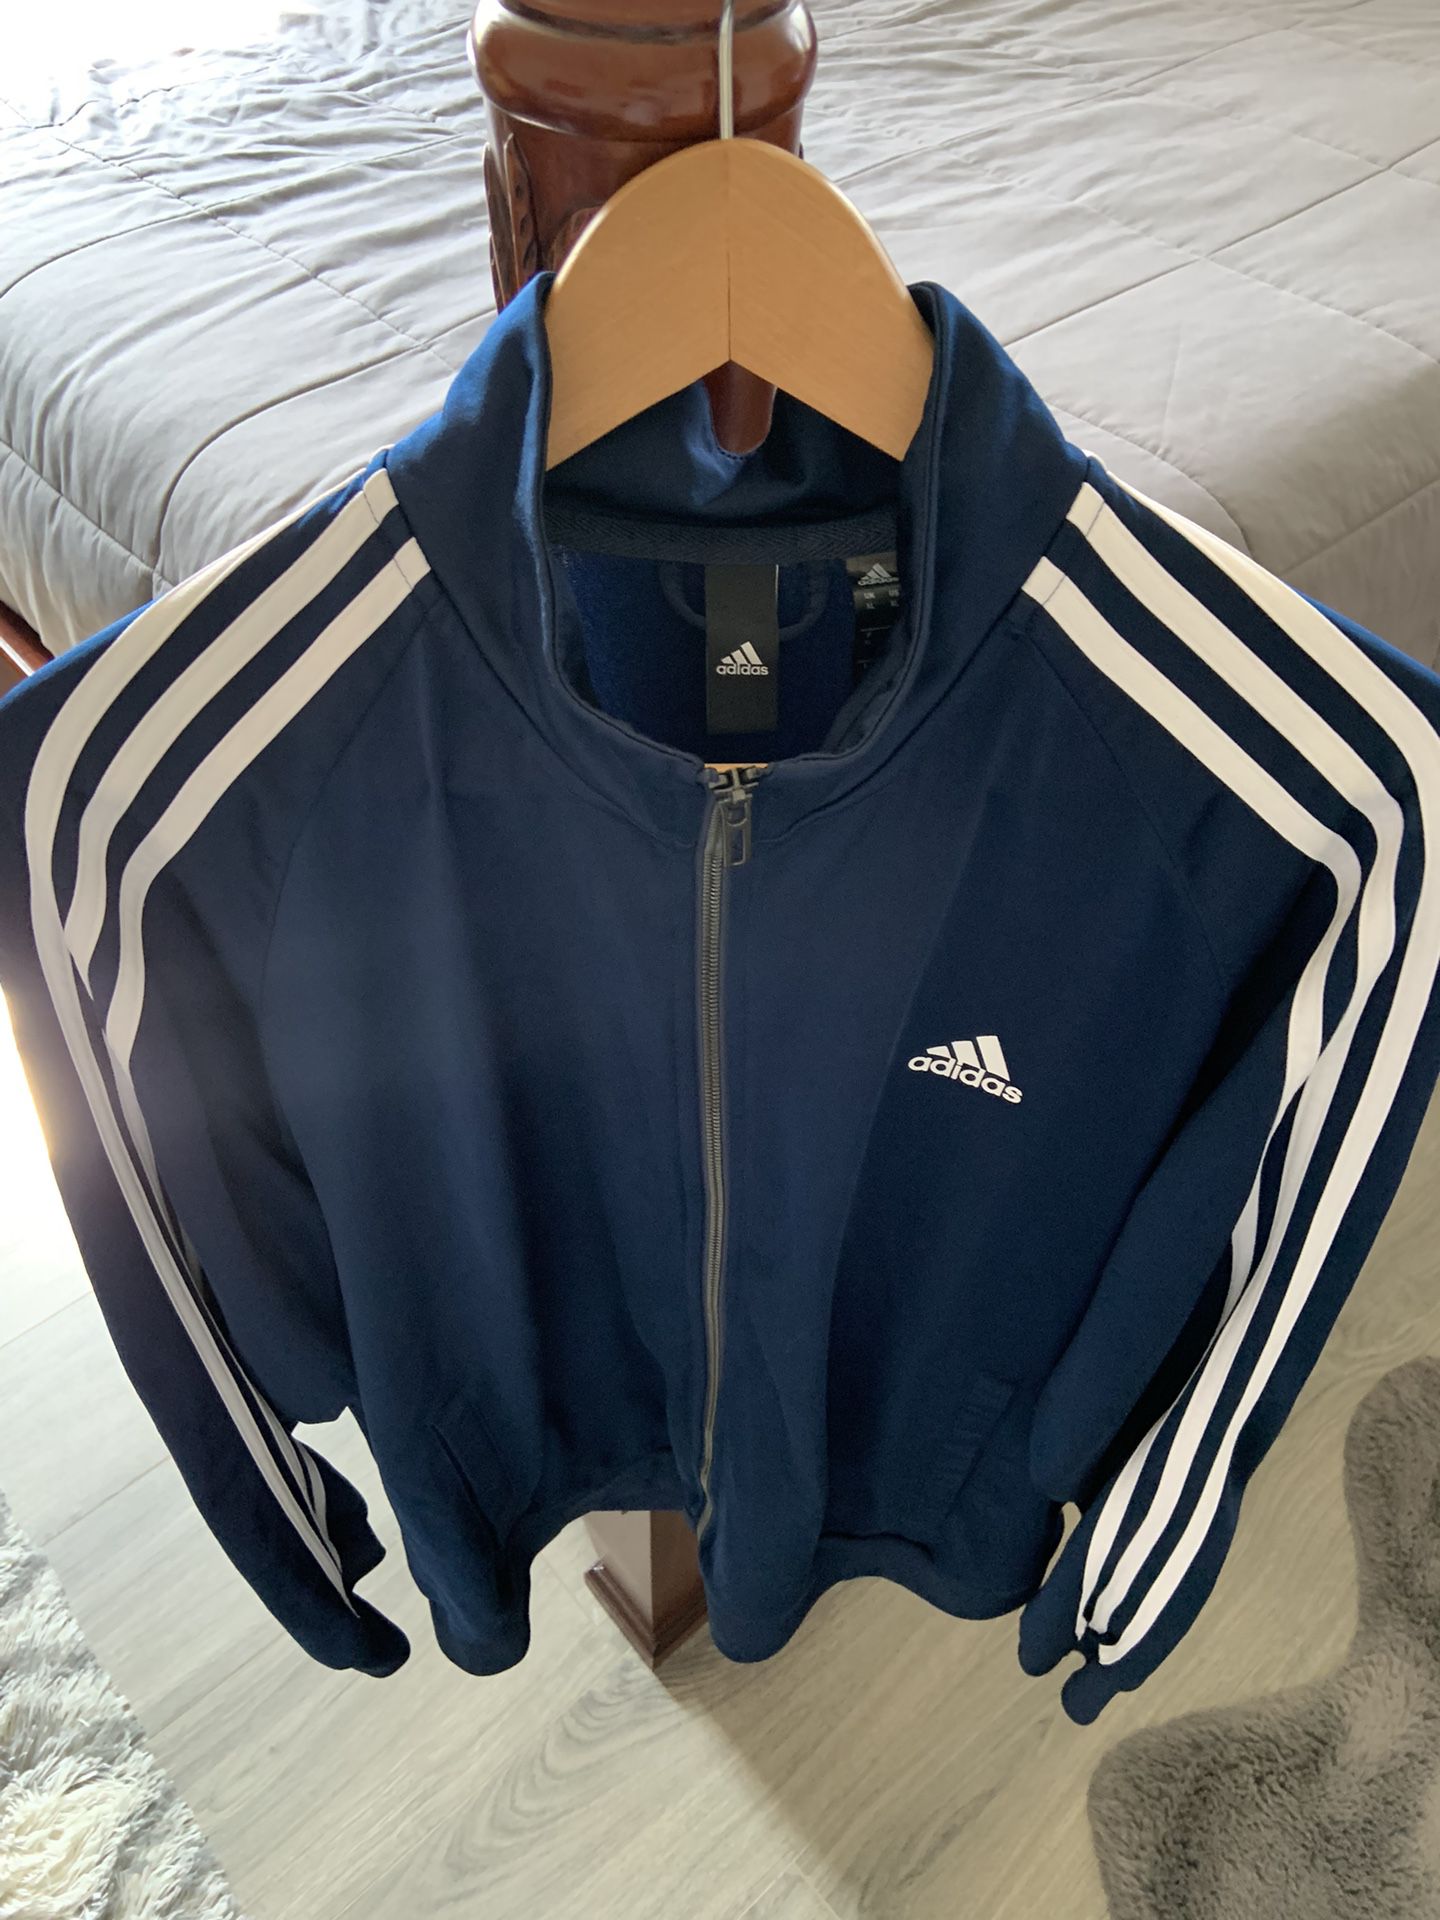 Adidas Track Jacket Sweater Blue White Stripes 